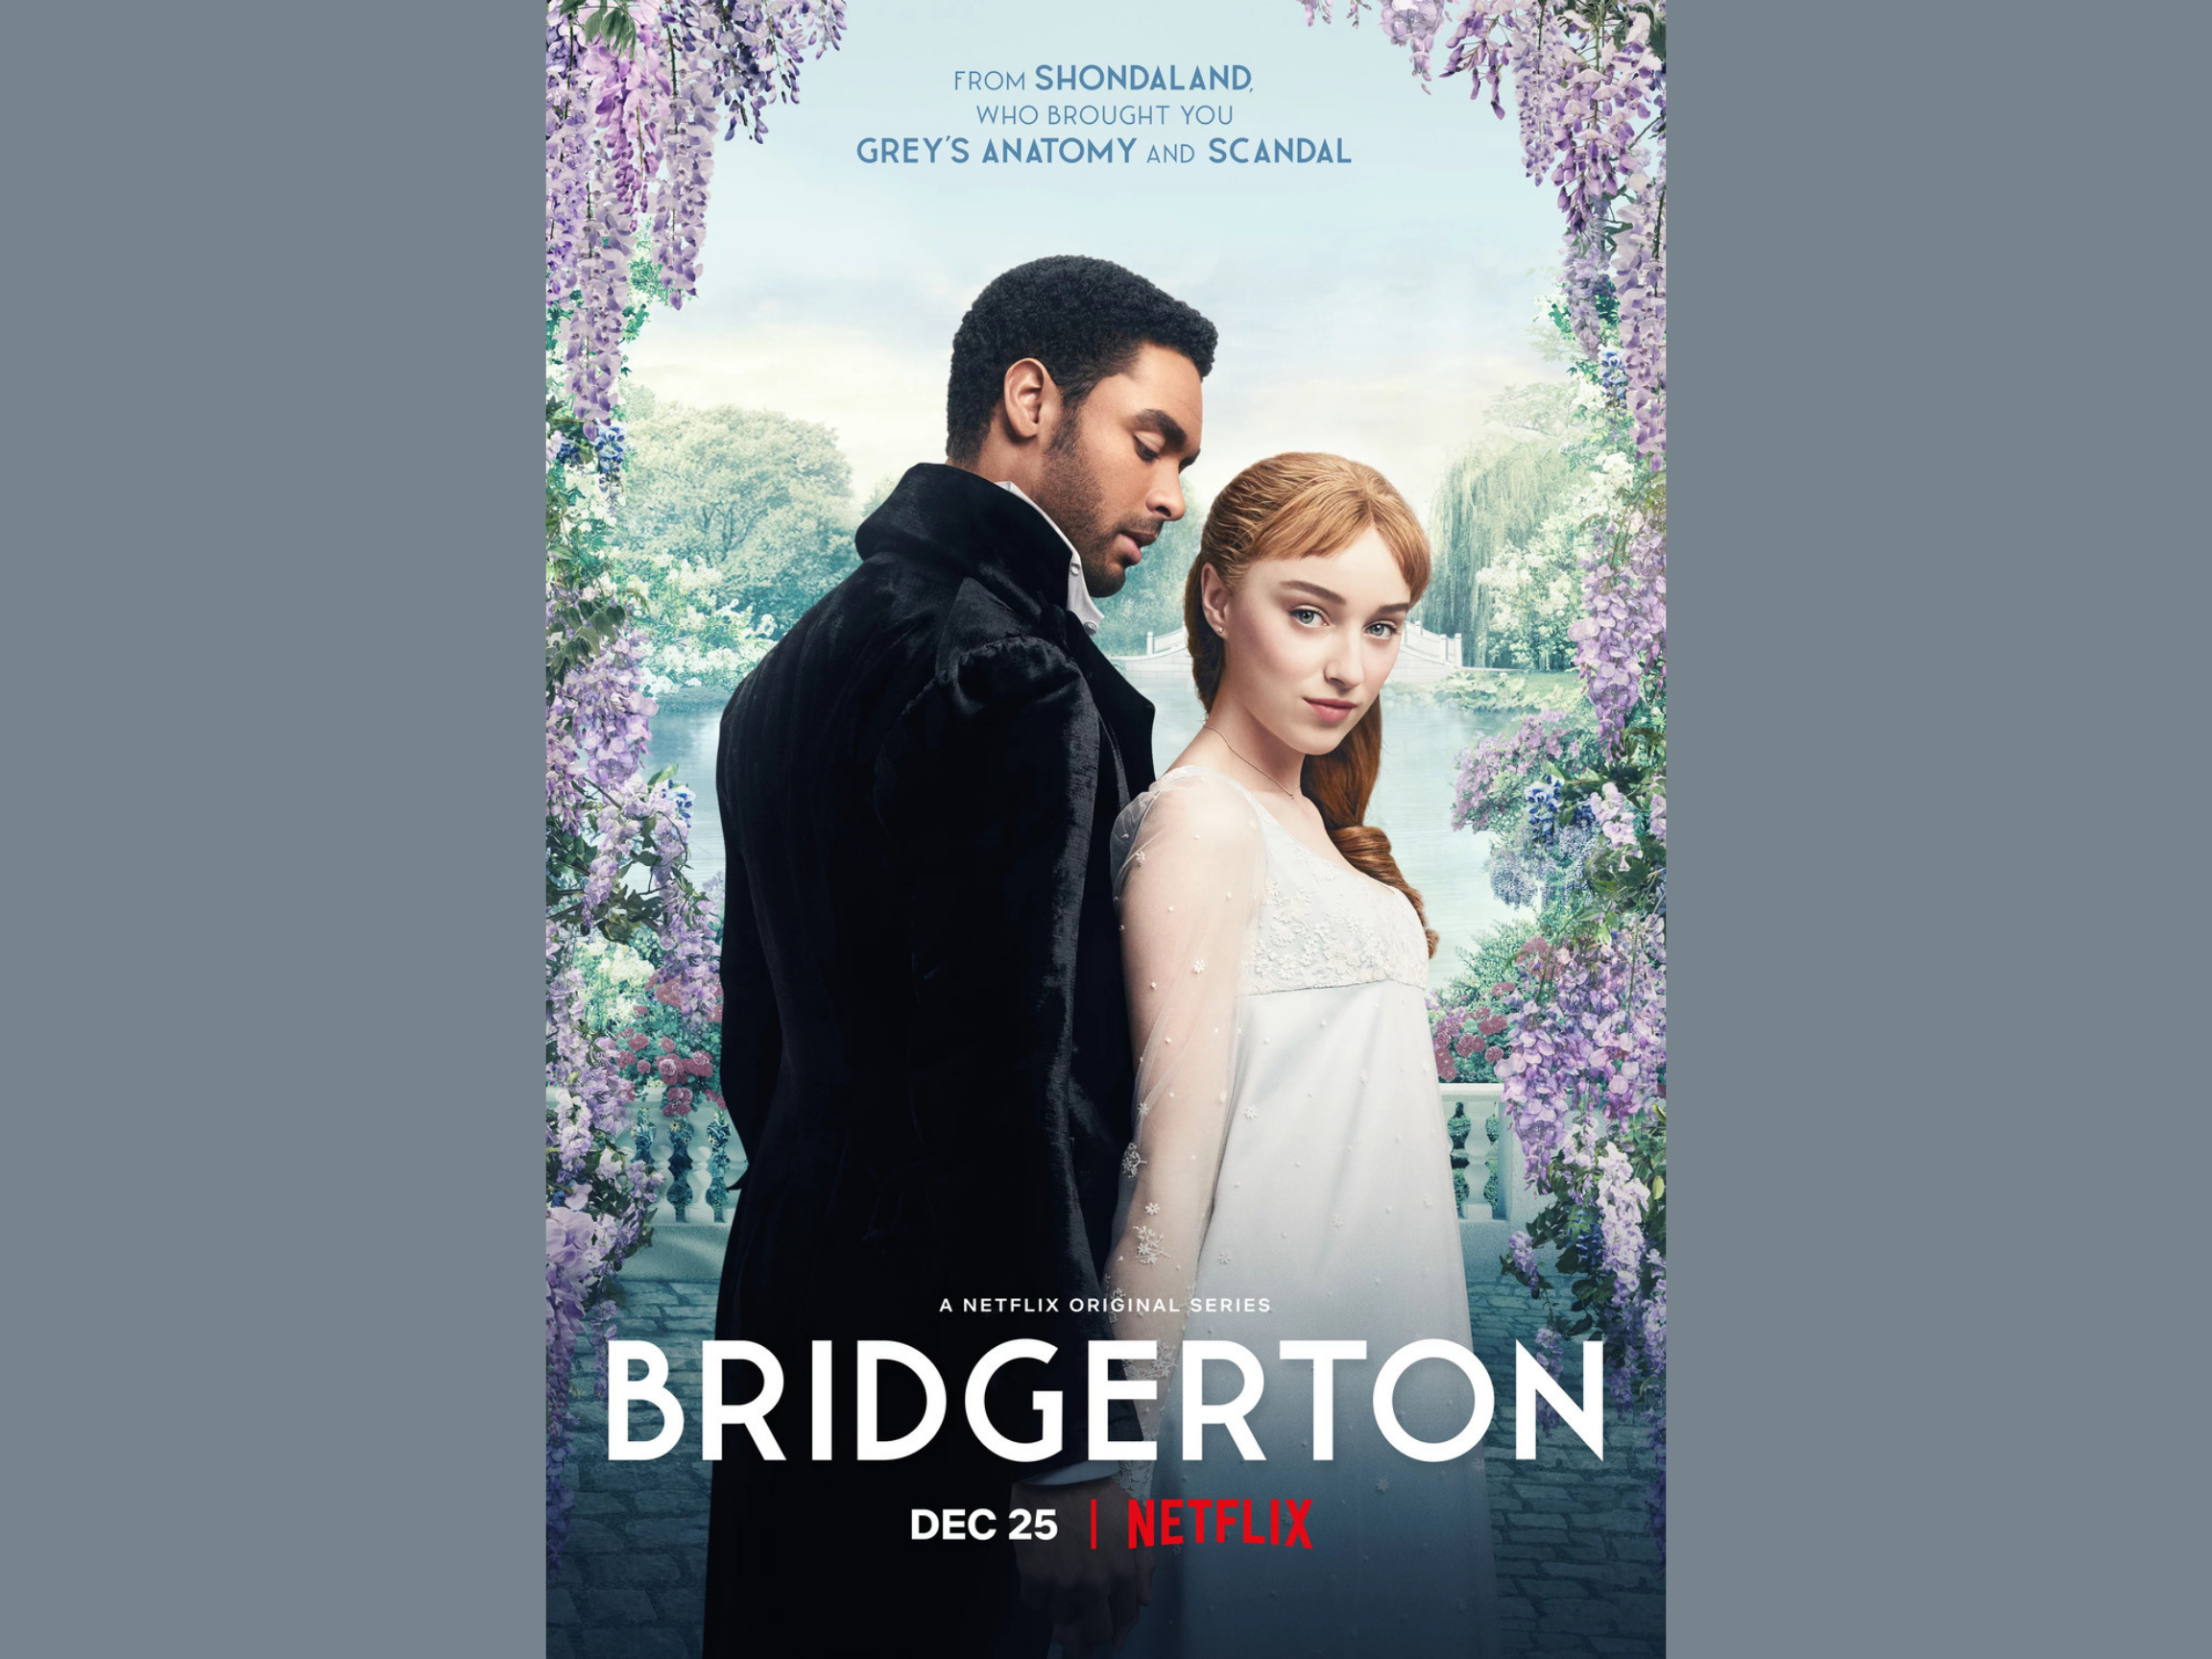 Does Netflix's Bridgerton Have A Race Problem?